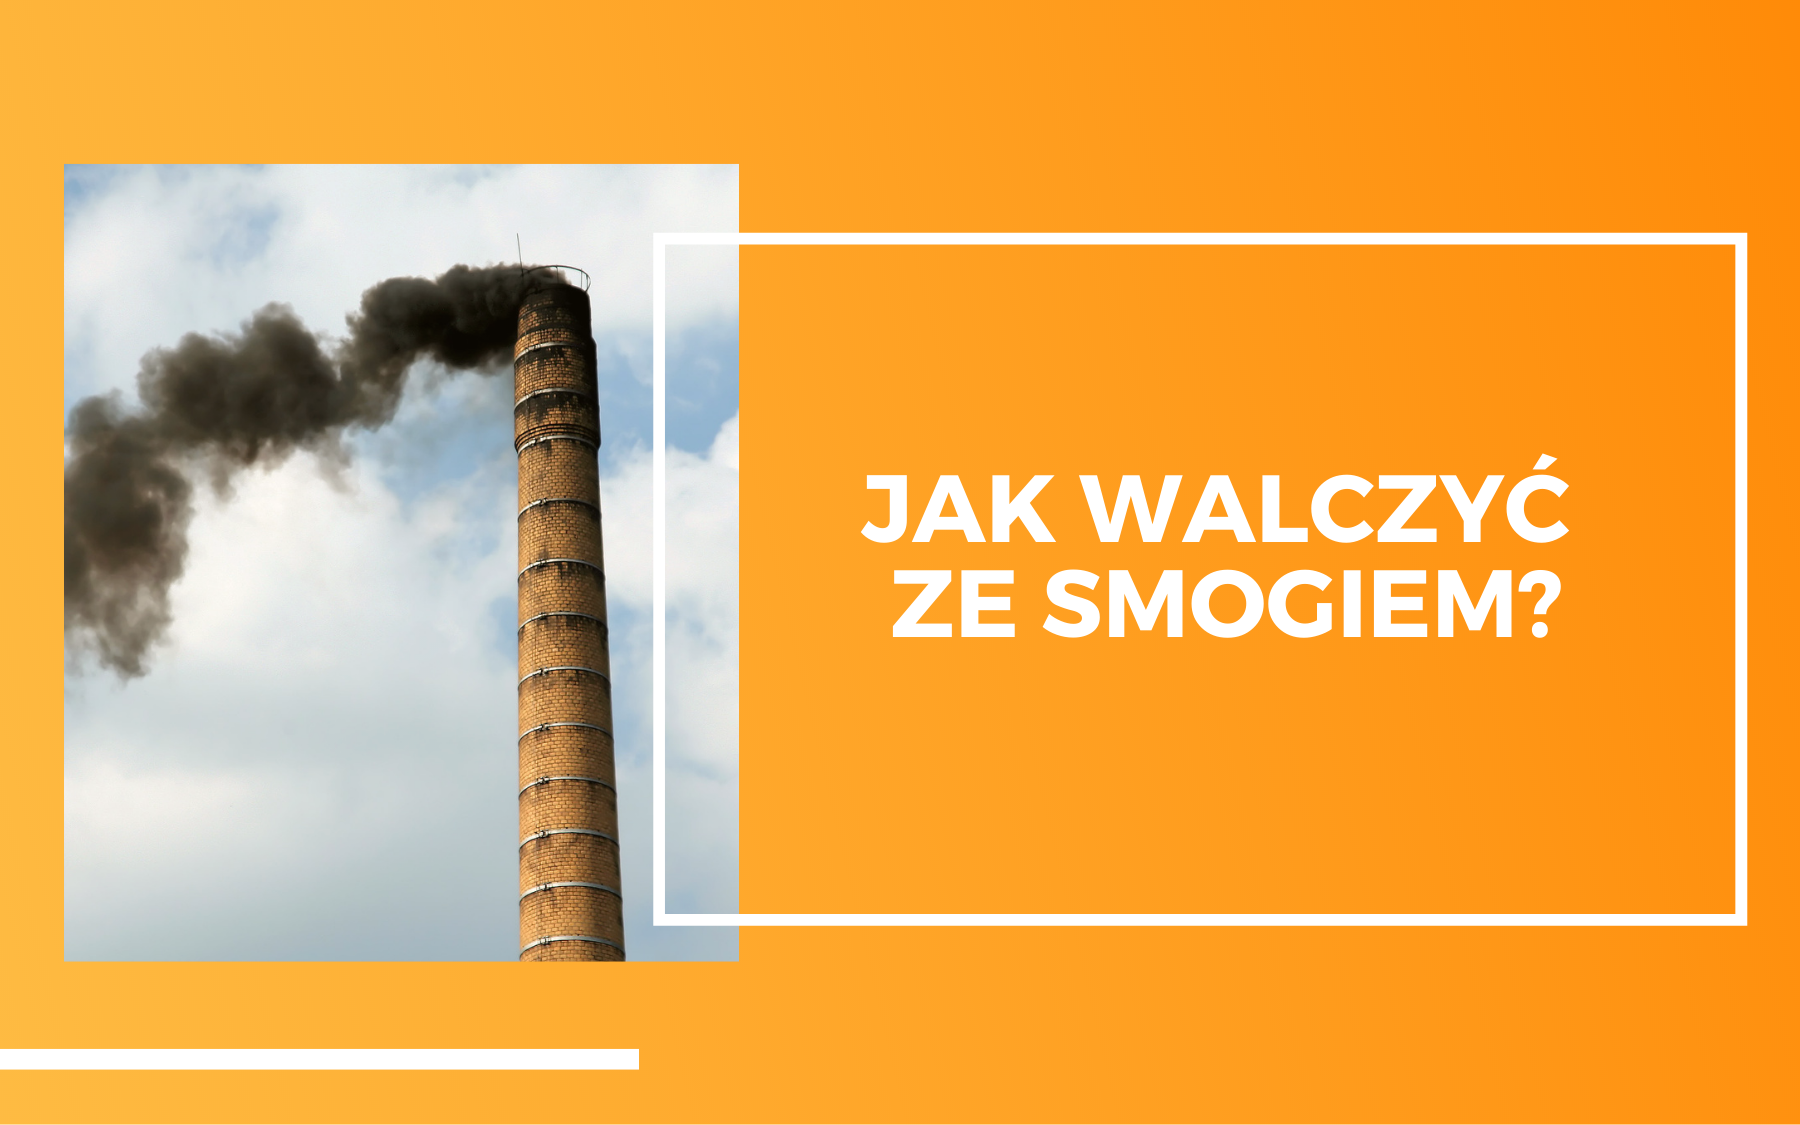 Po lewej stronie zdjęcie wysokiego ceglanego komina z którego wydobywa się czarny dym. Po prawej biały tekst na pomarańczowym tle: Jak walczyć ze smogiem?